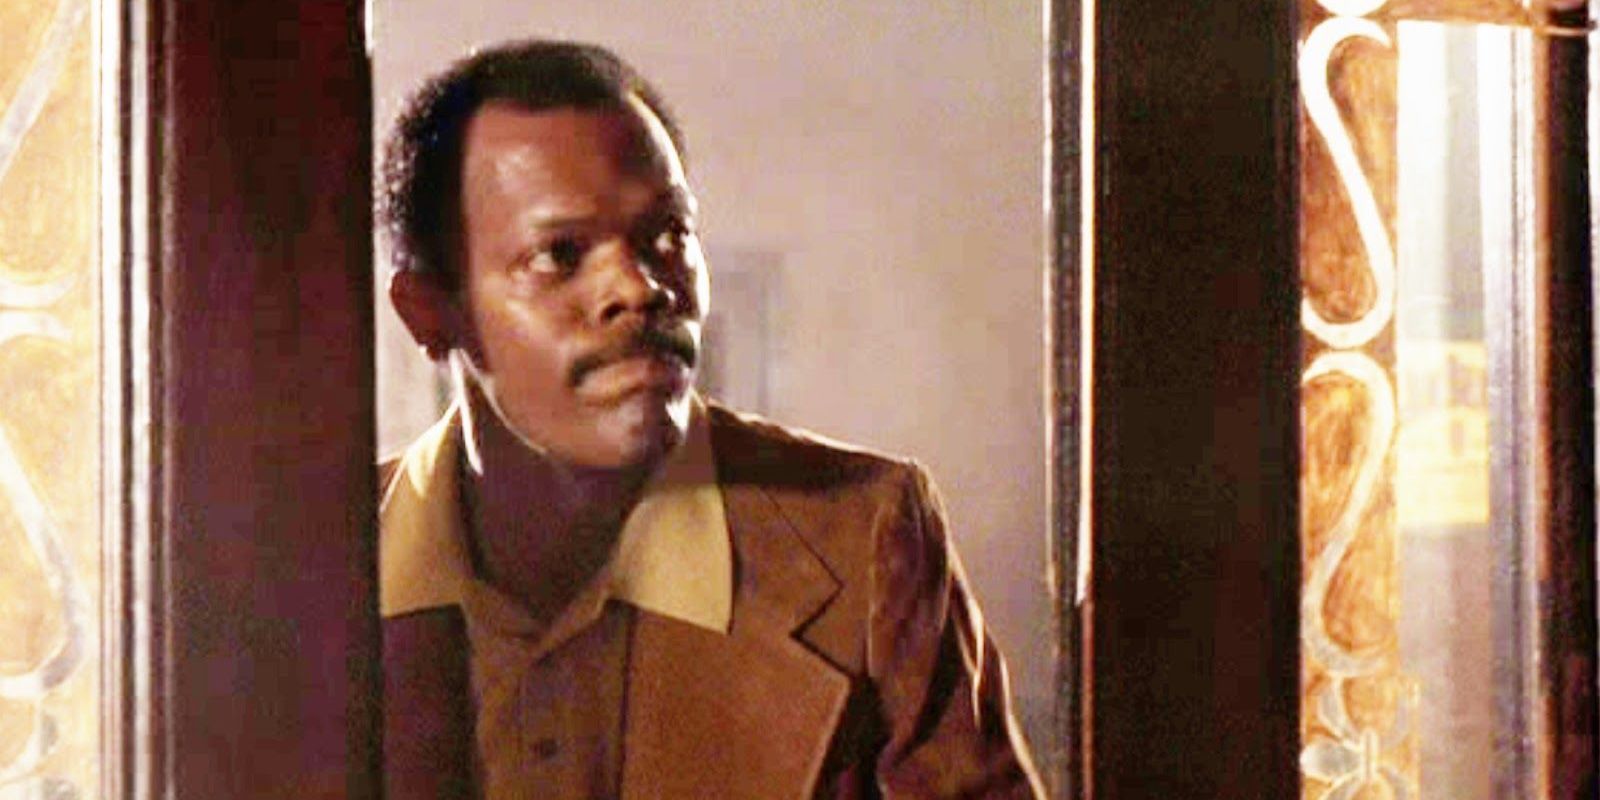 Samuel L Jackson as Stacks opening his front door in Goodfellas